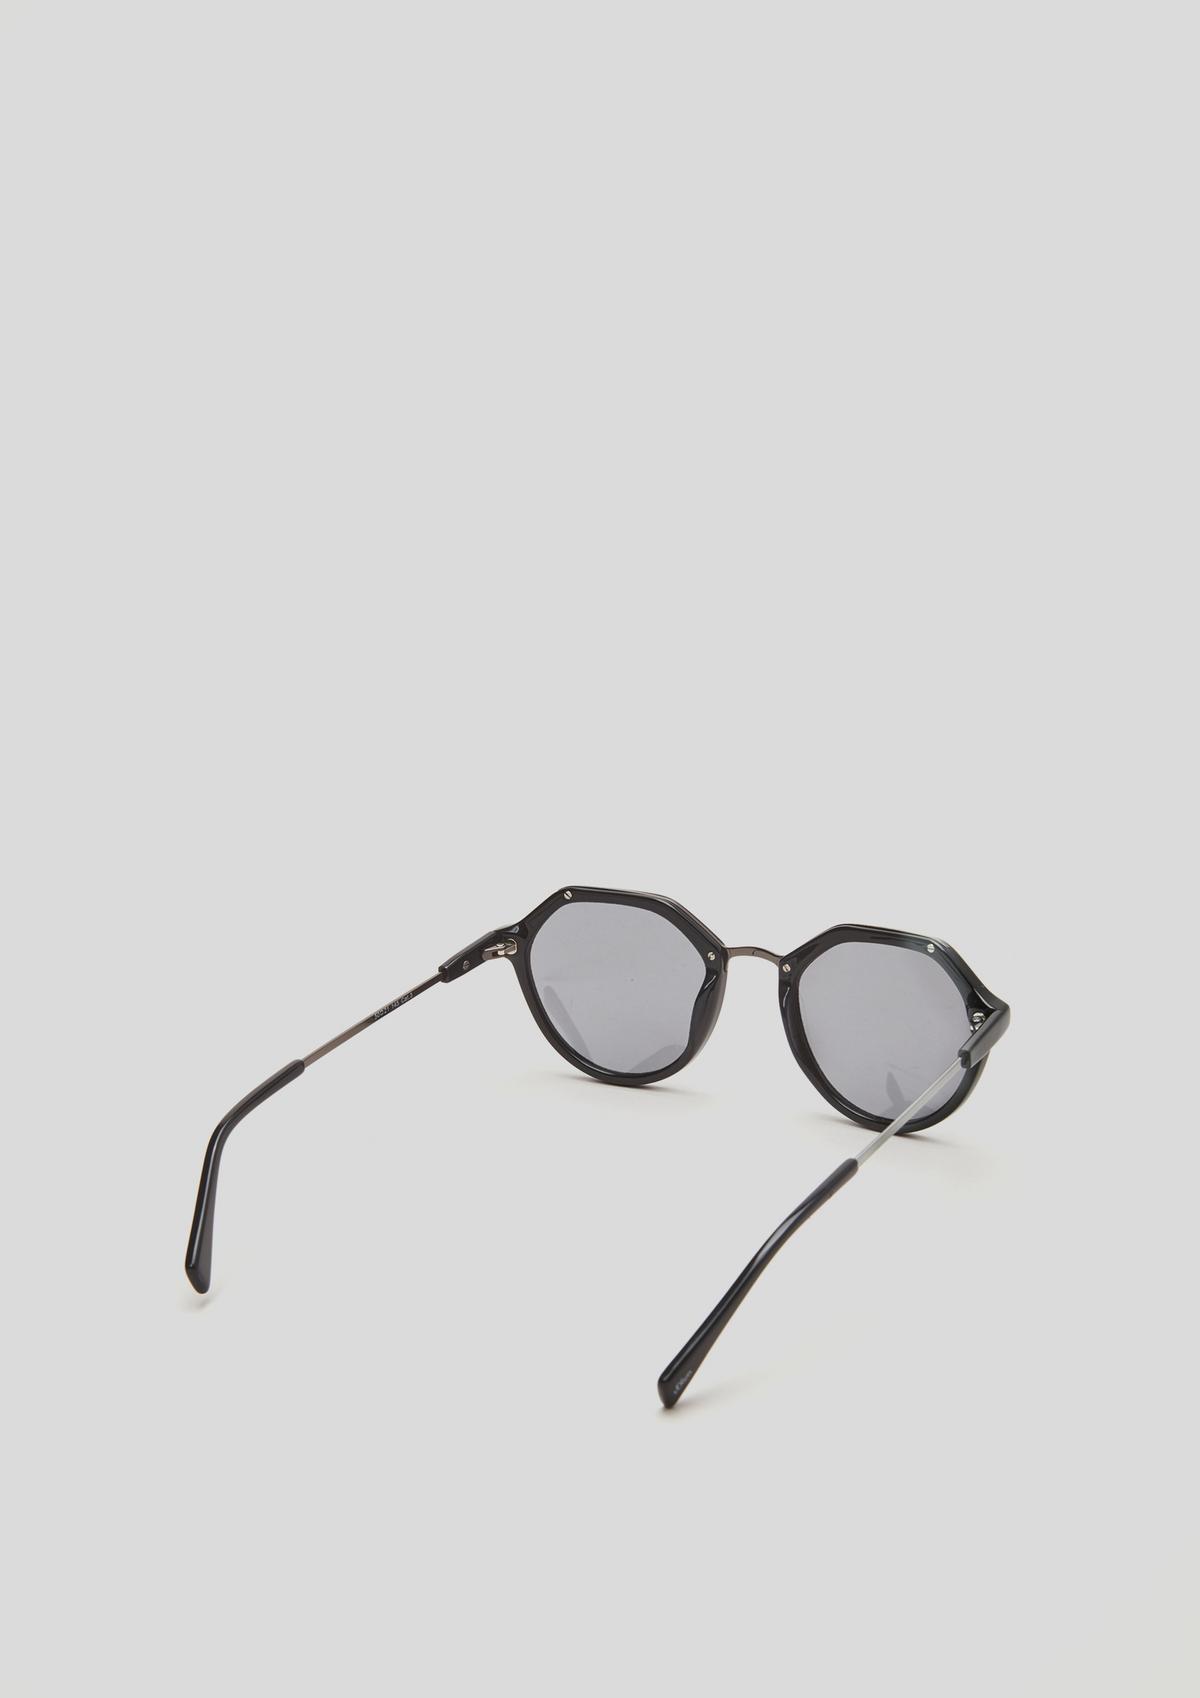 s.Oliver Sončna očala oglate oblike